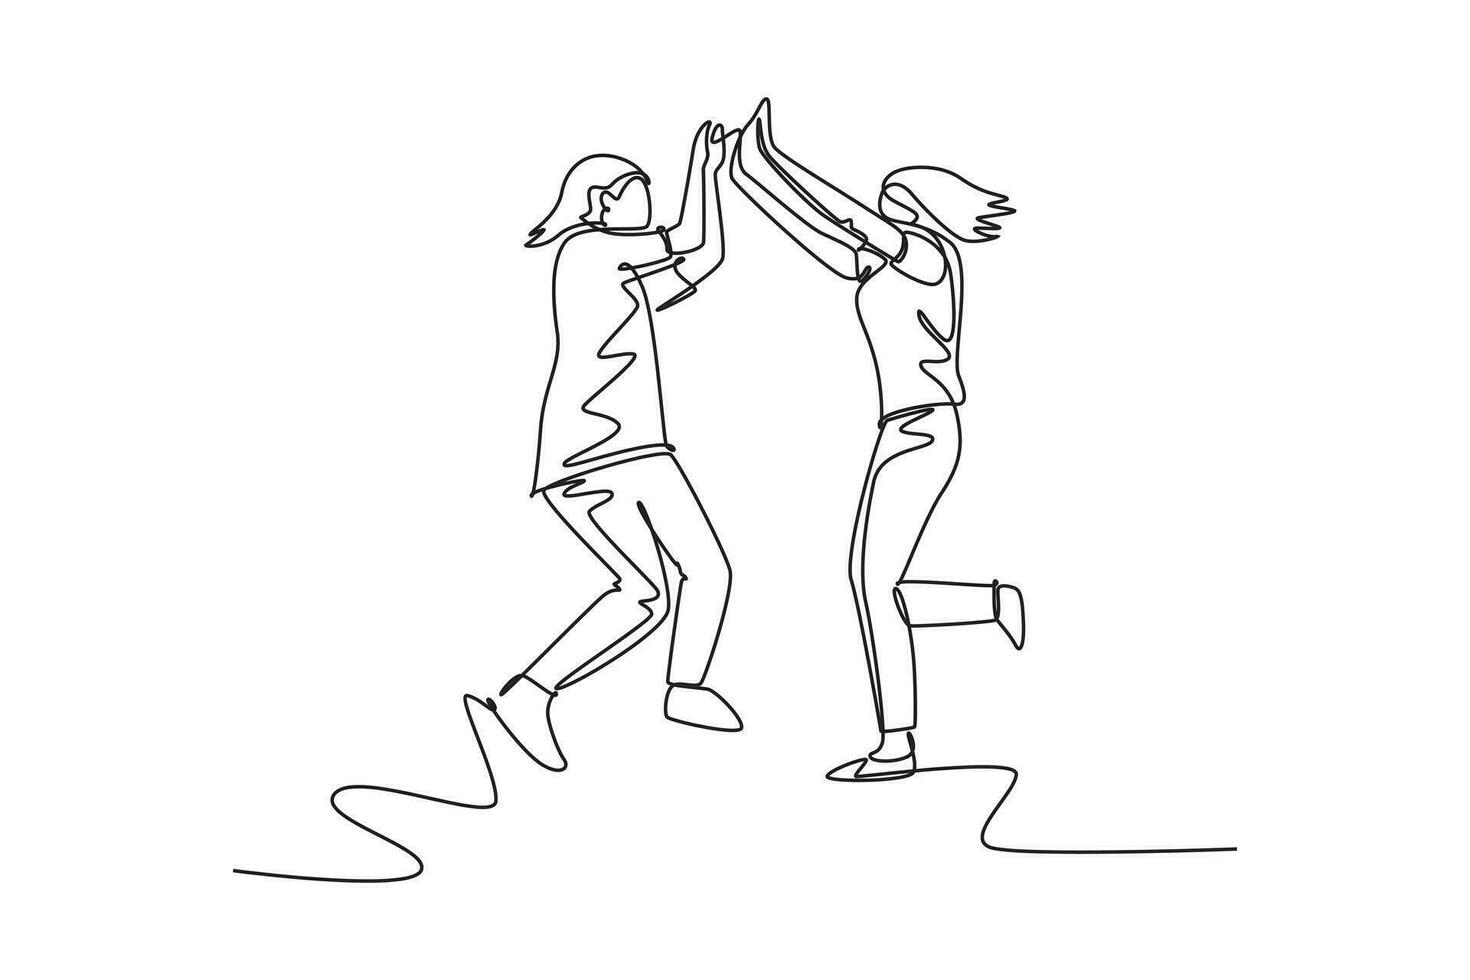 Single einer Linie Zeichnung zwei jung glücklich Frauen Springen und geben hoch fünf Geste zu feiern Geschäft erfolgreich. genießen Freundschaft Konzept. kontinuierlich Linie zeichnen Design Grafik Vektor Illustration